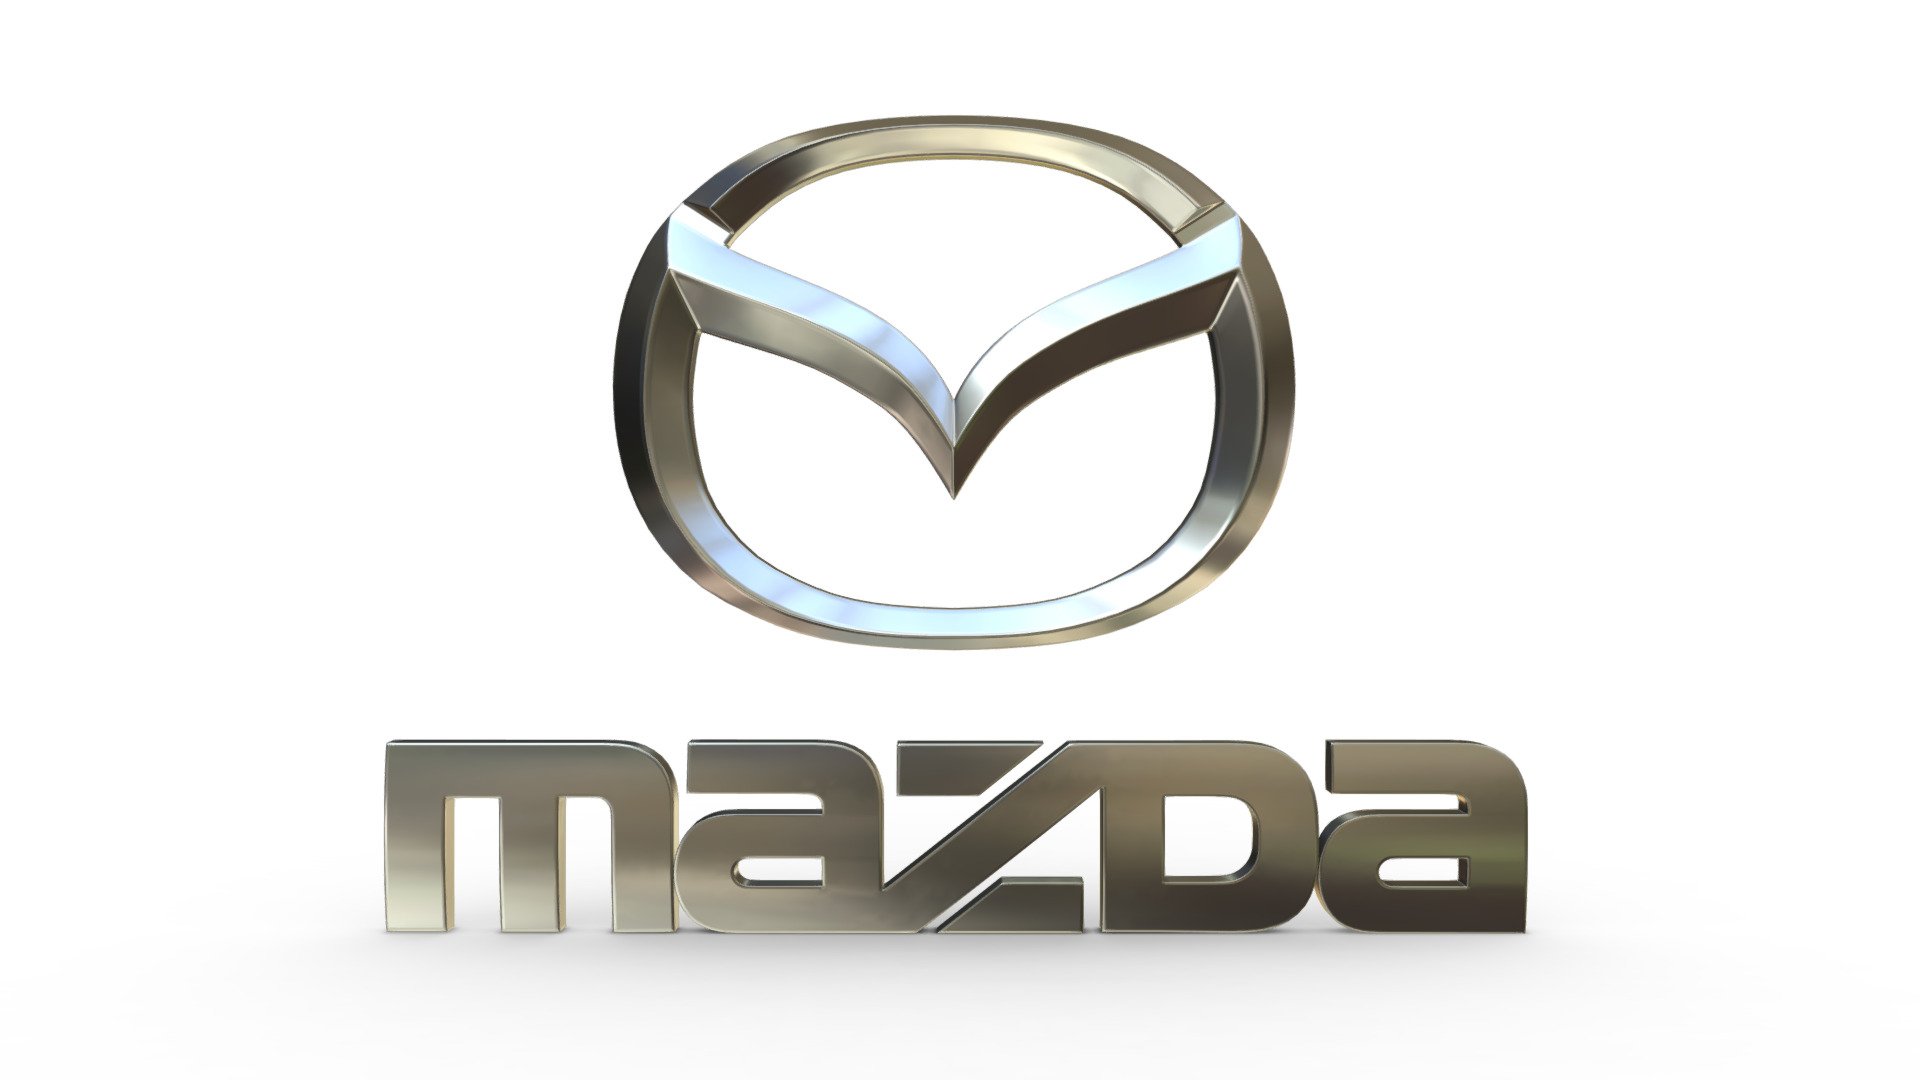 Mazda CX-7 2011